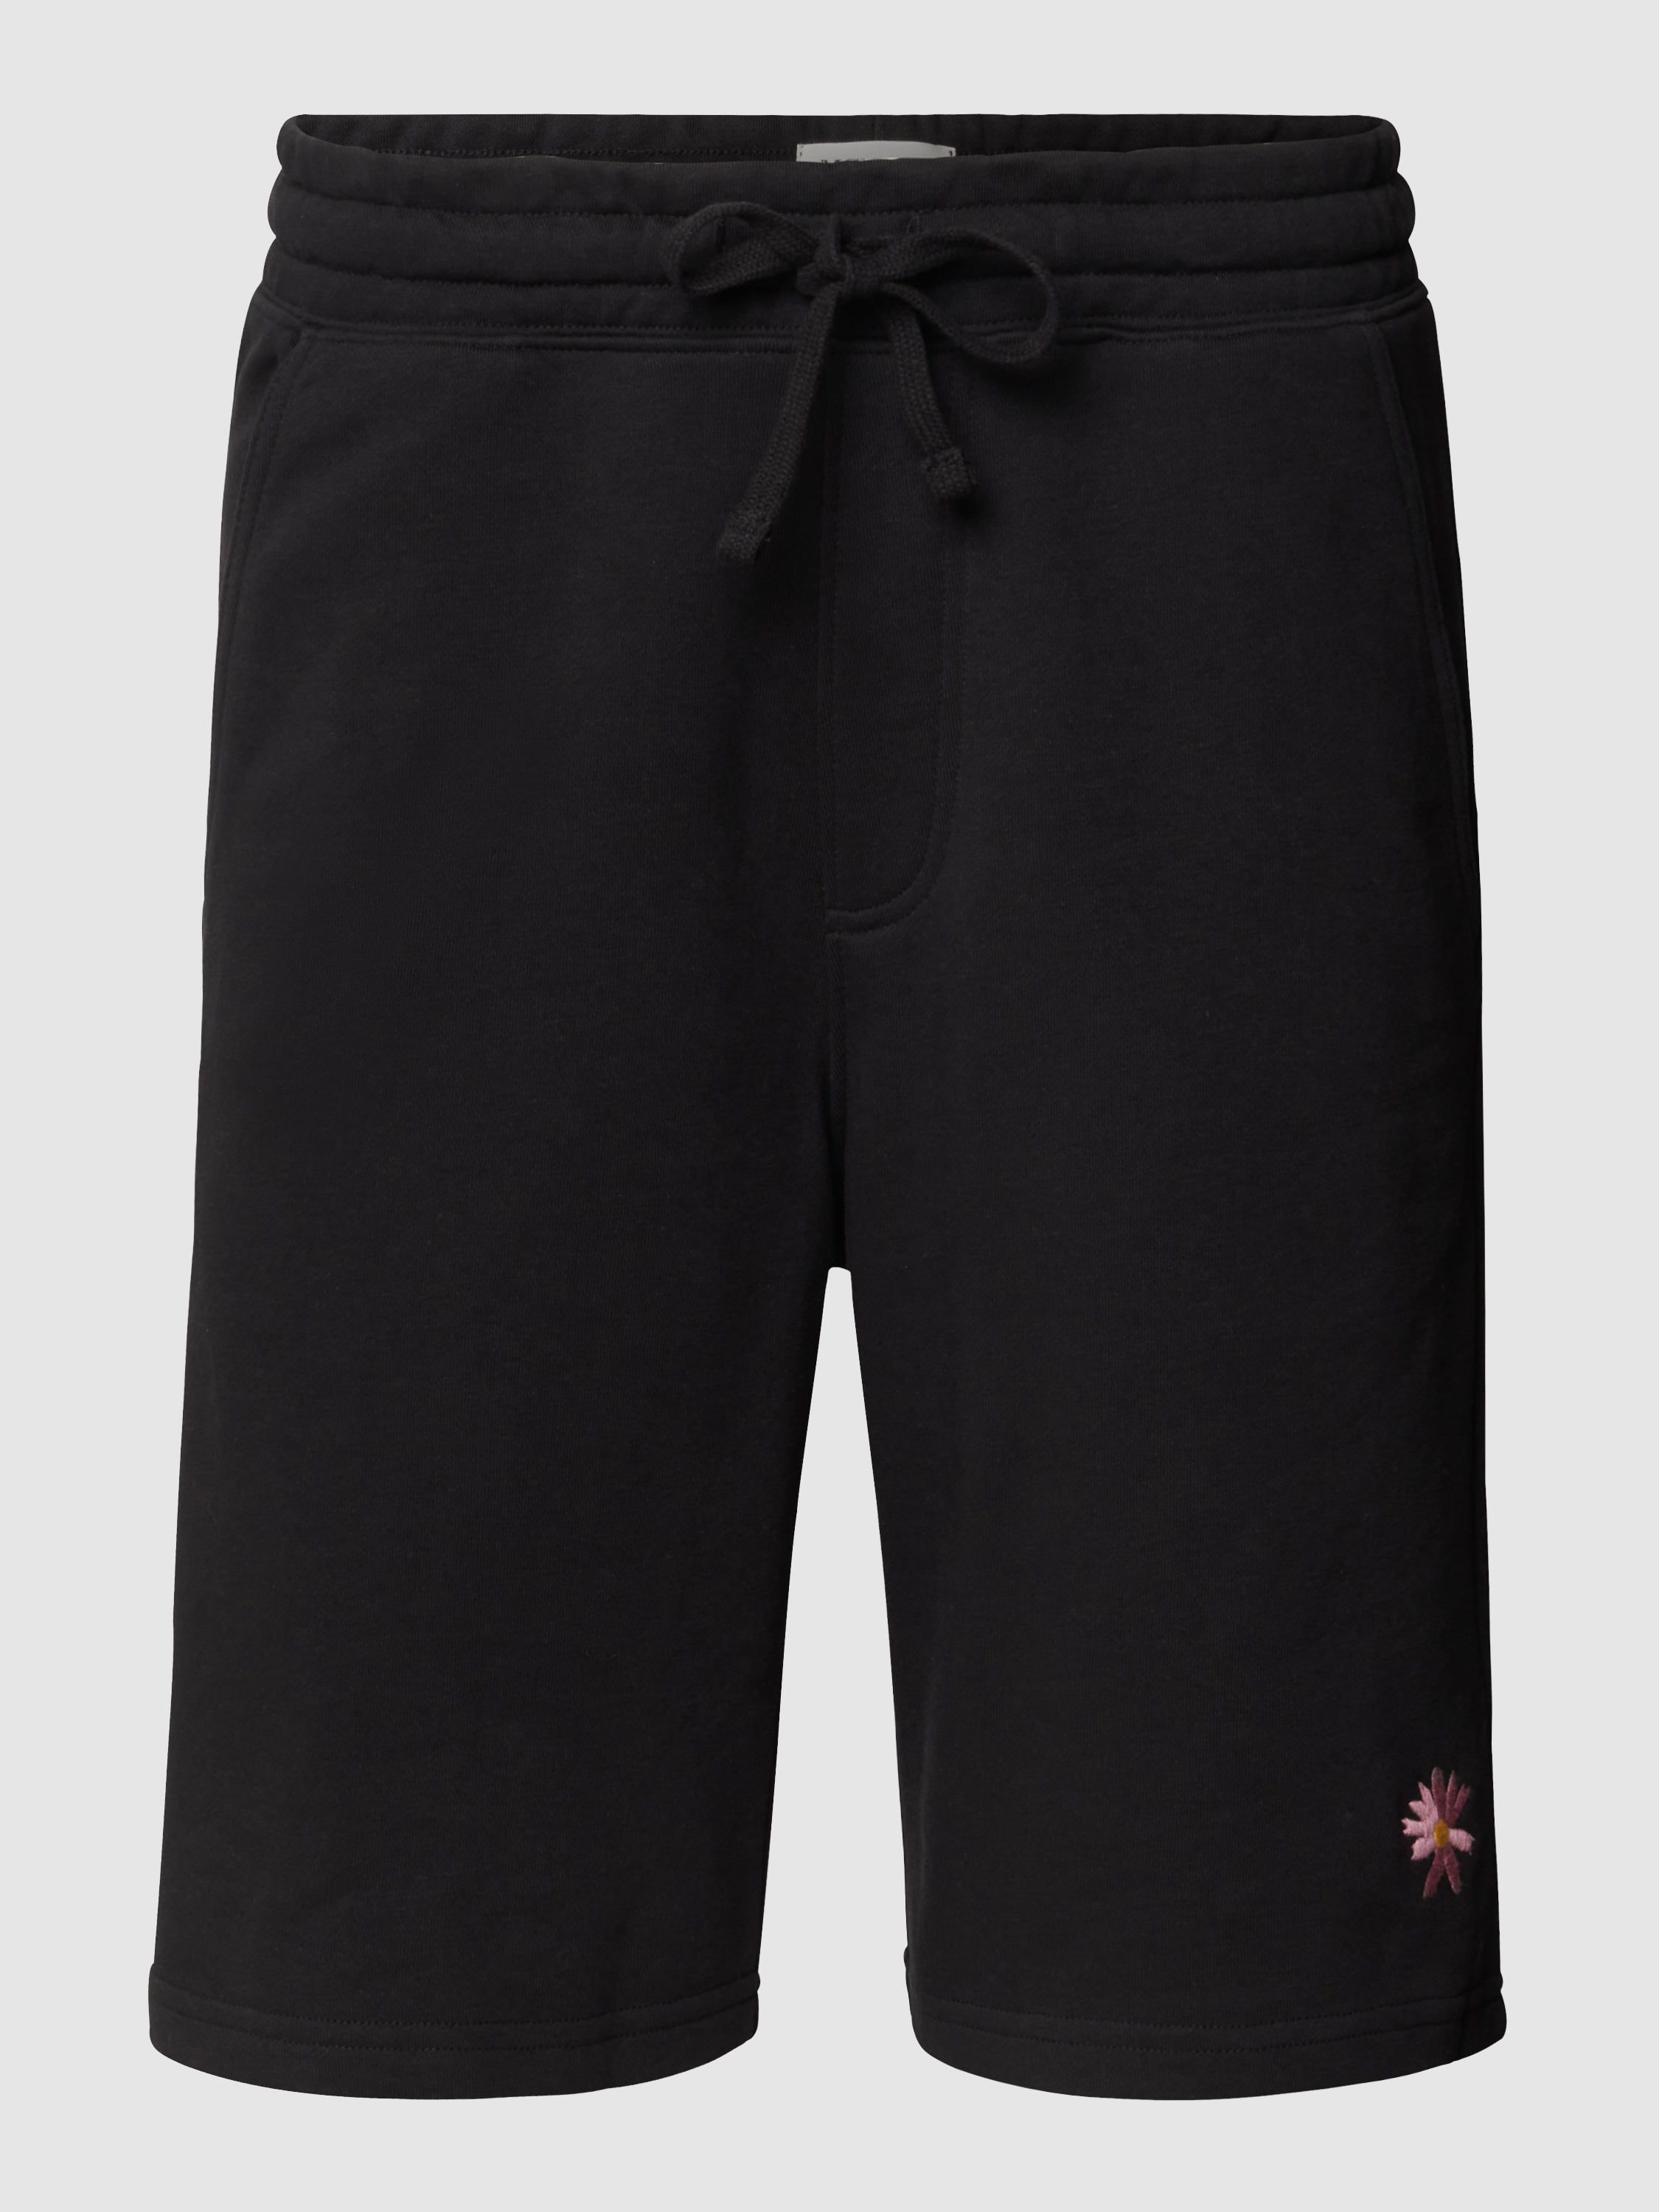 Трикотажные шорты мужские McNeal 1540902 черные XL (доставка из-за рубежа)